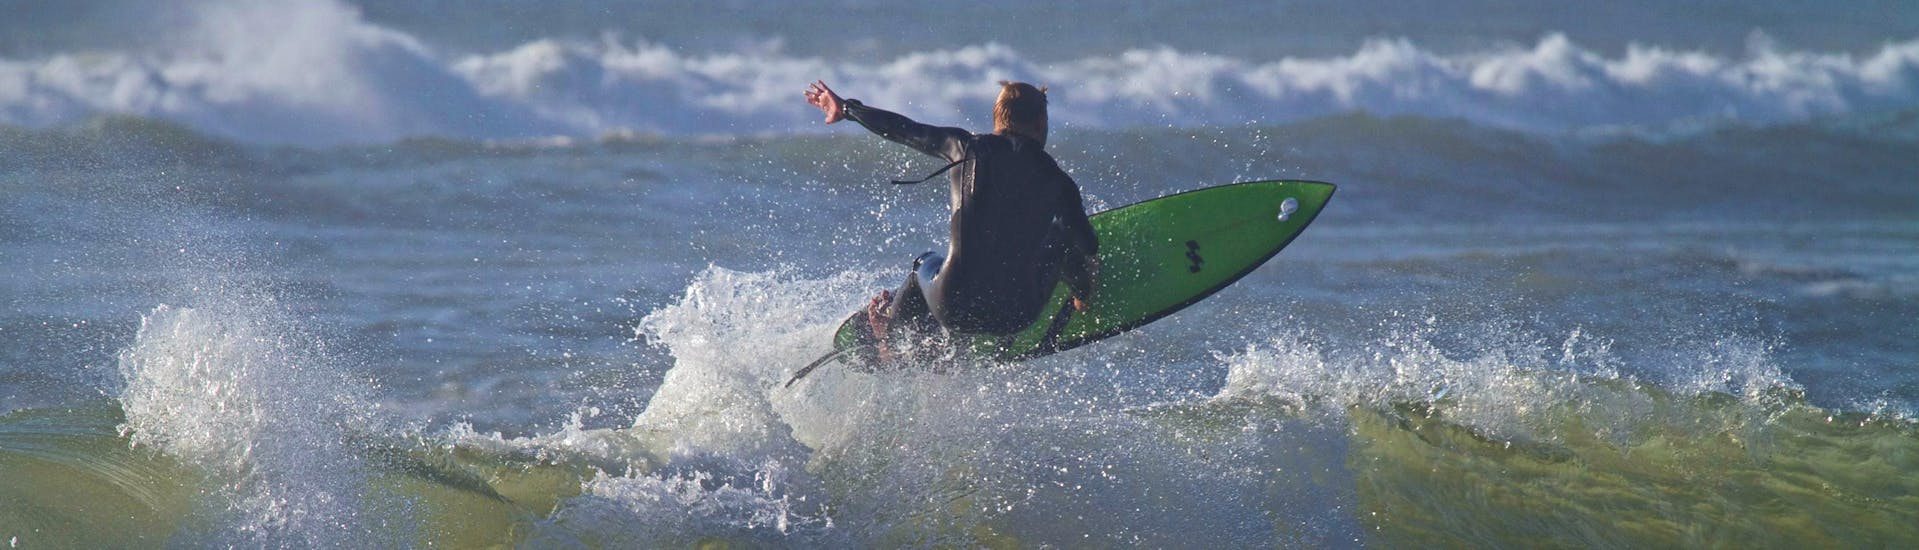 Un surfeur surfe sur une vague pendant son cours privé de surf avec Capbreton Surfer School.